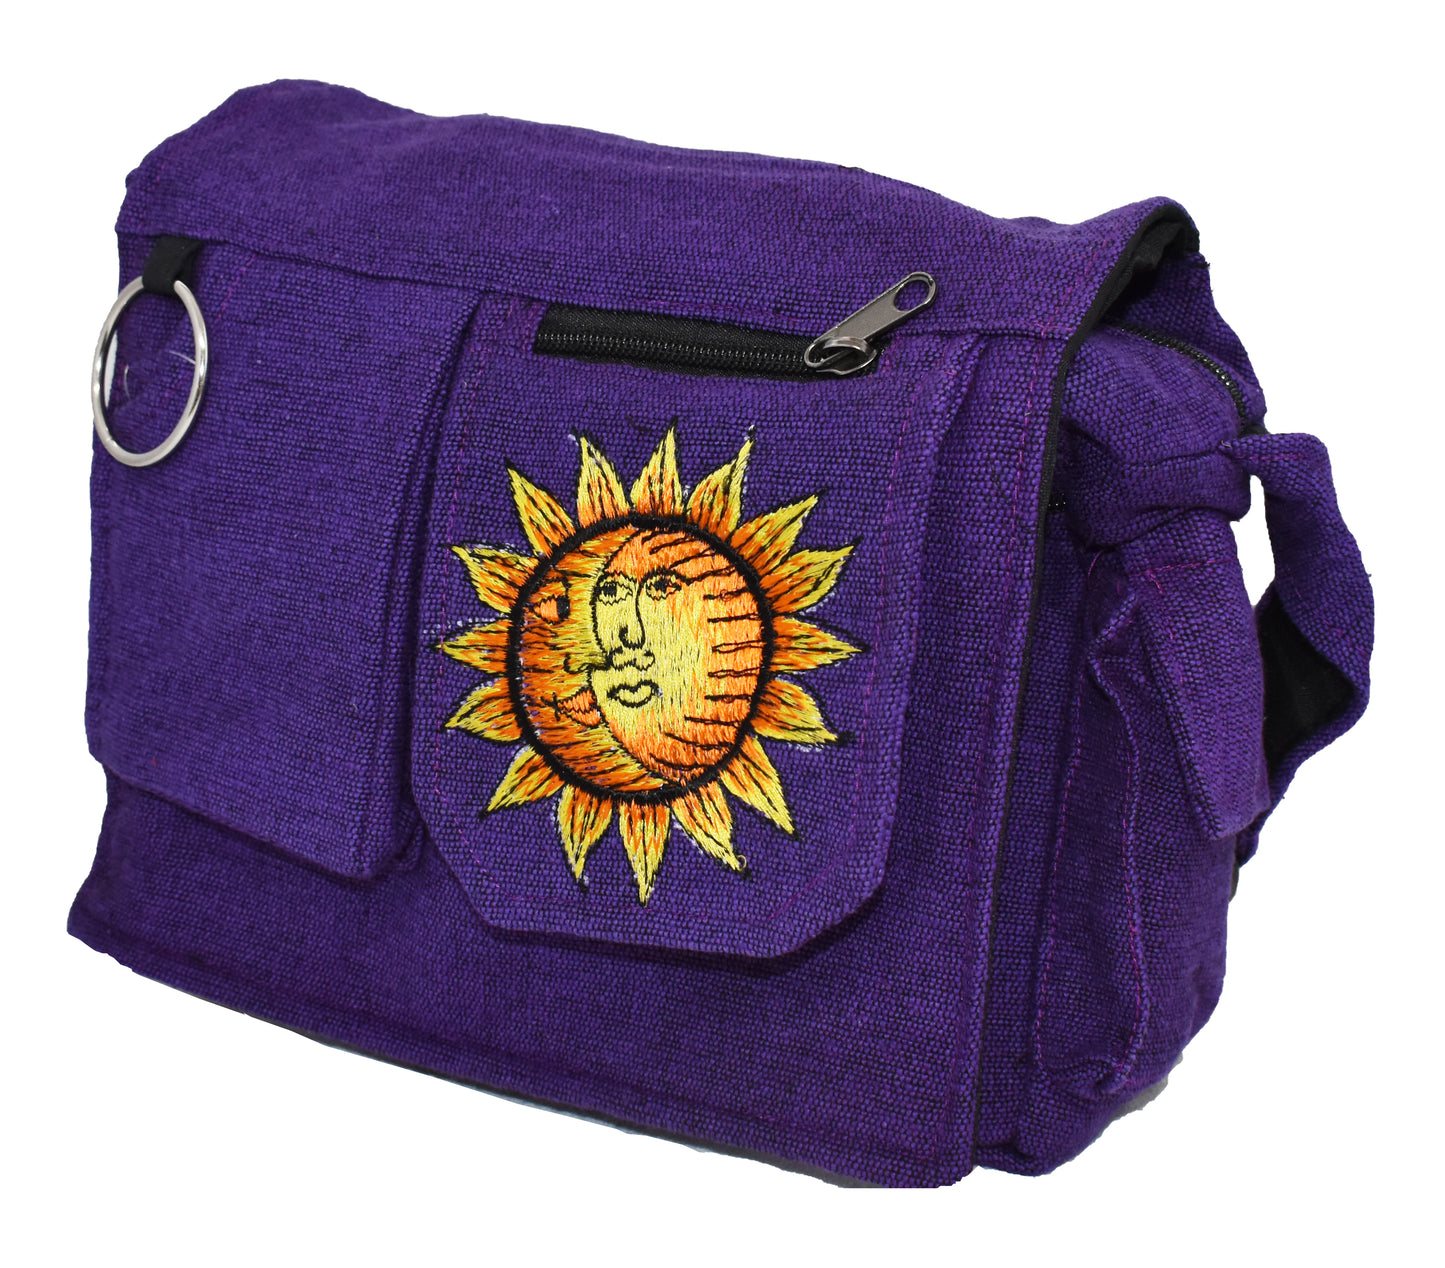 Sun & Moon Shoulder Bag